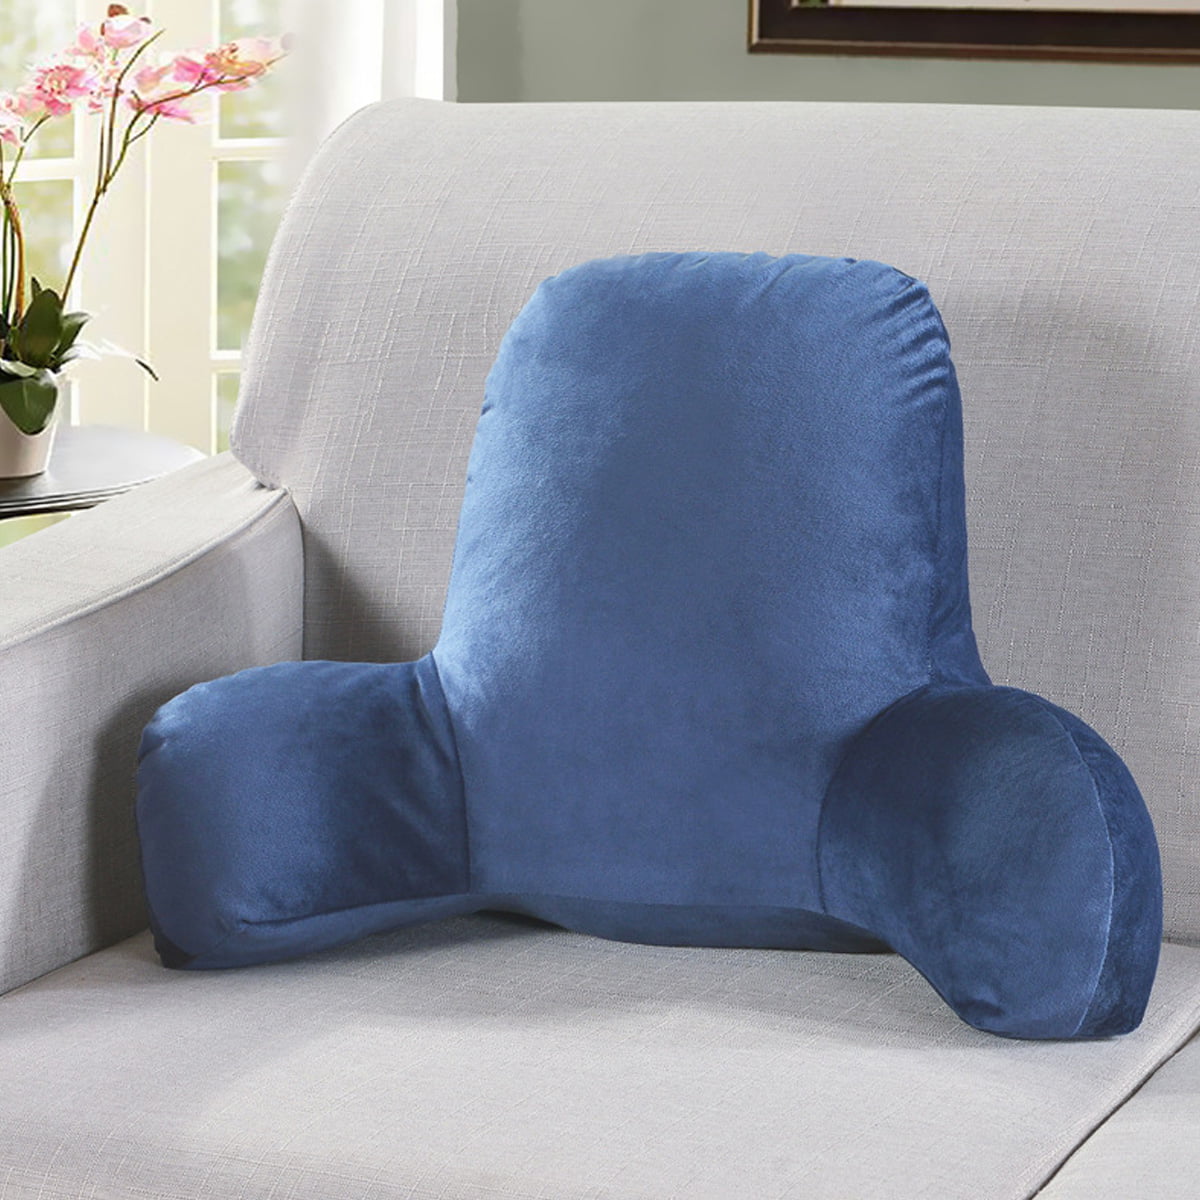 TV Relax Pillow Sofa Chair Cushion 